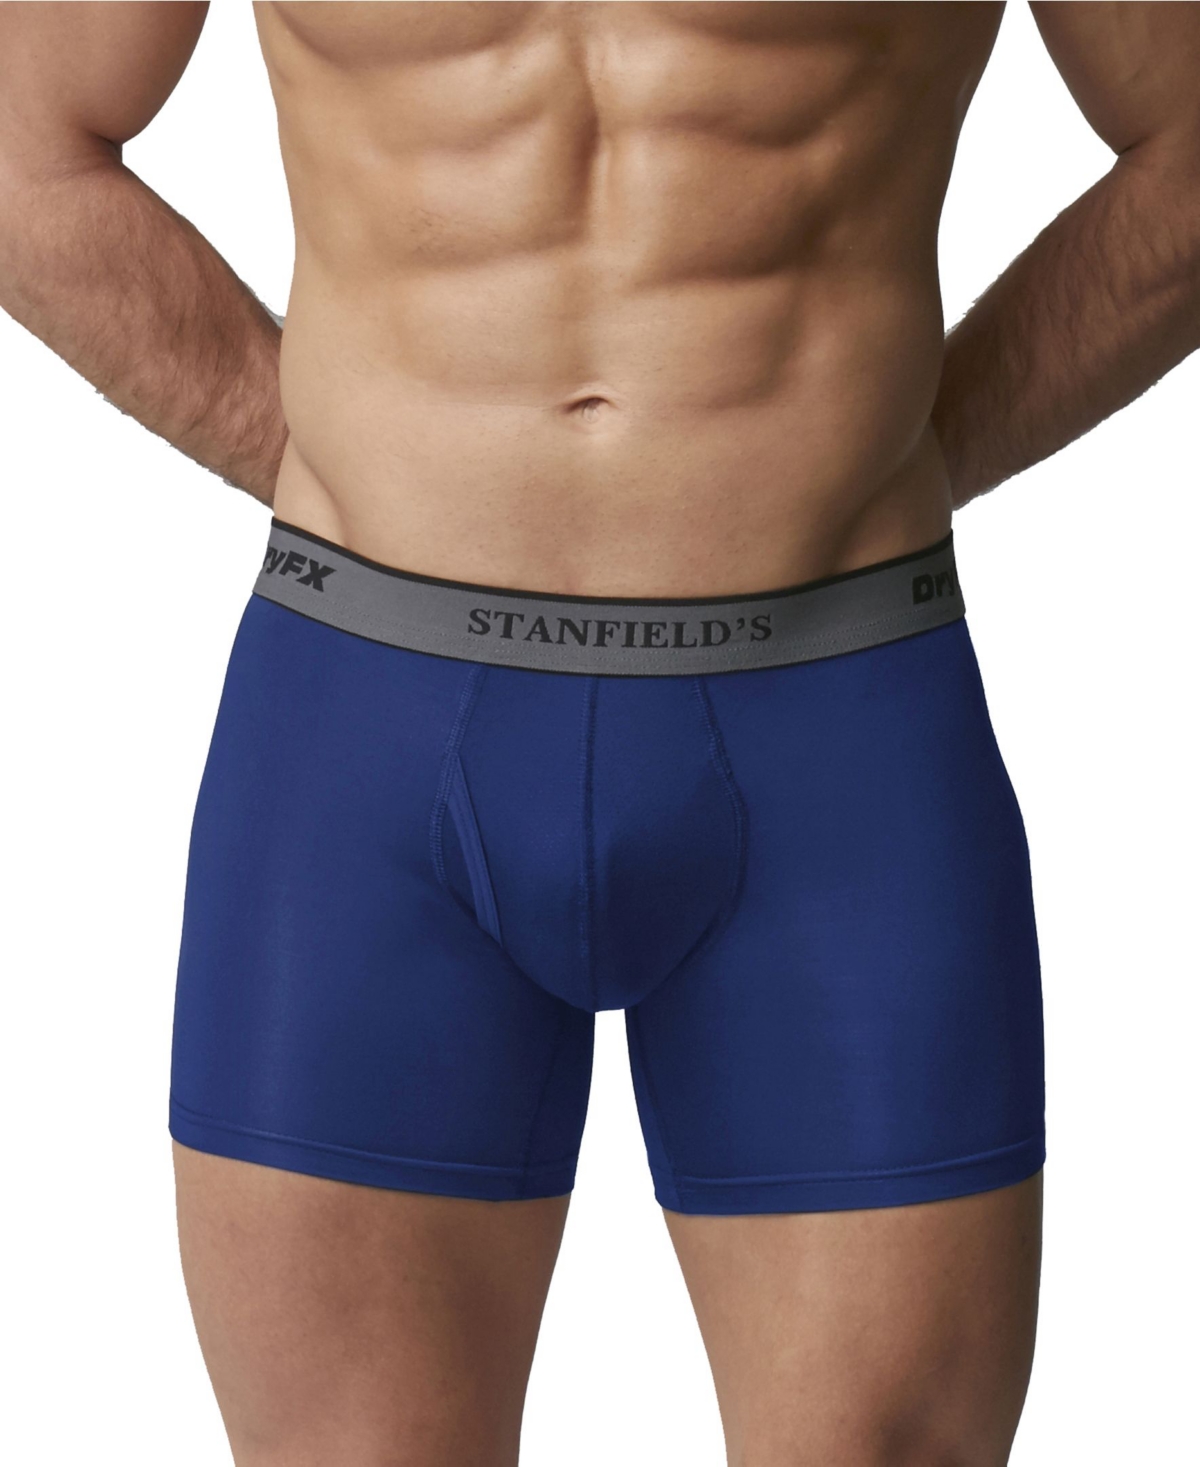 DryFX Men's Performance Boxer Brief Underwear - Sapphire